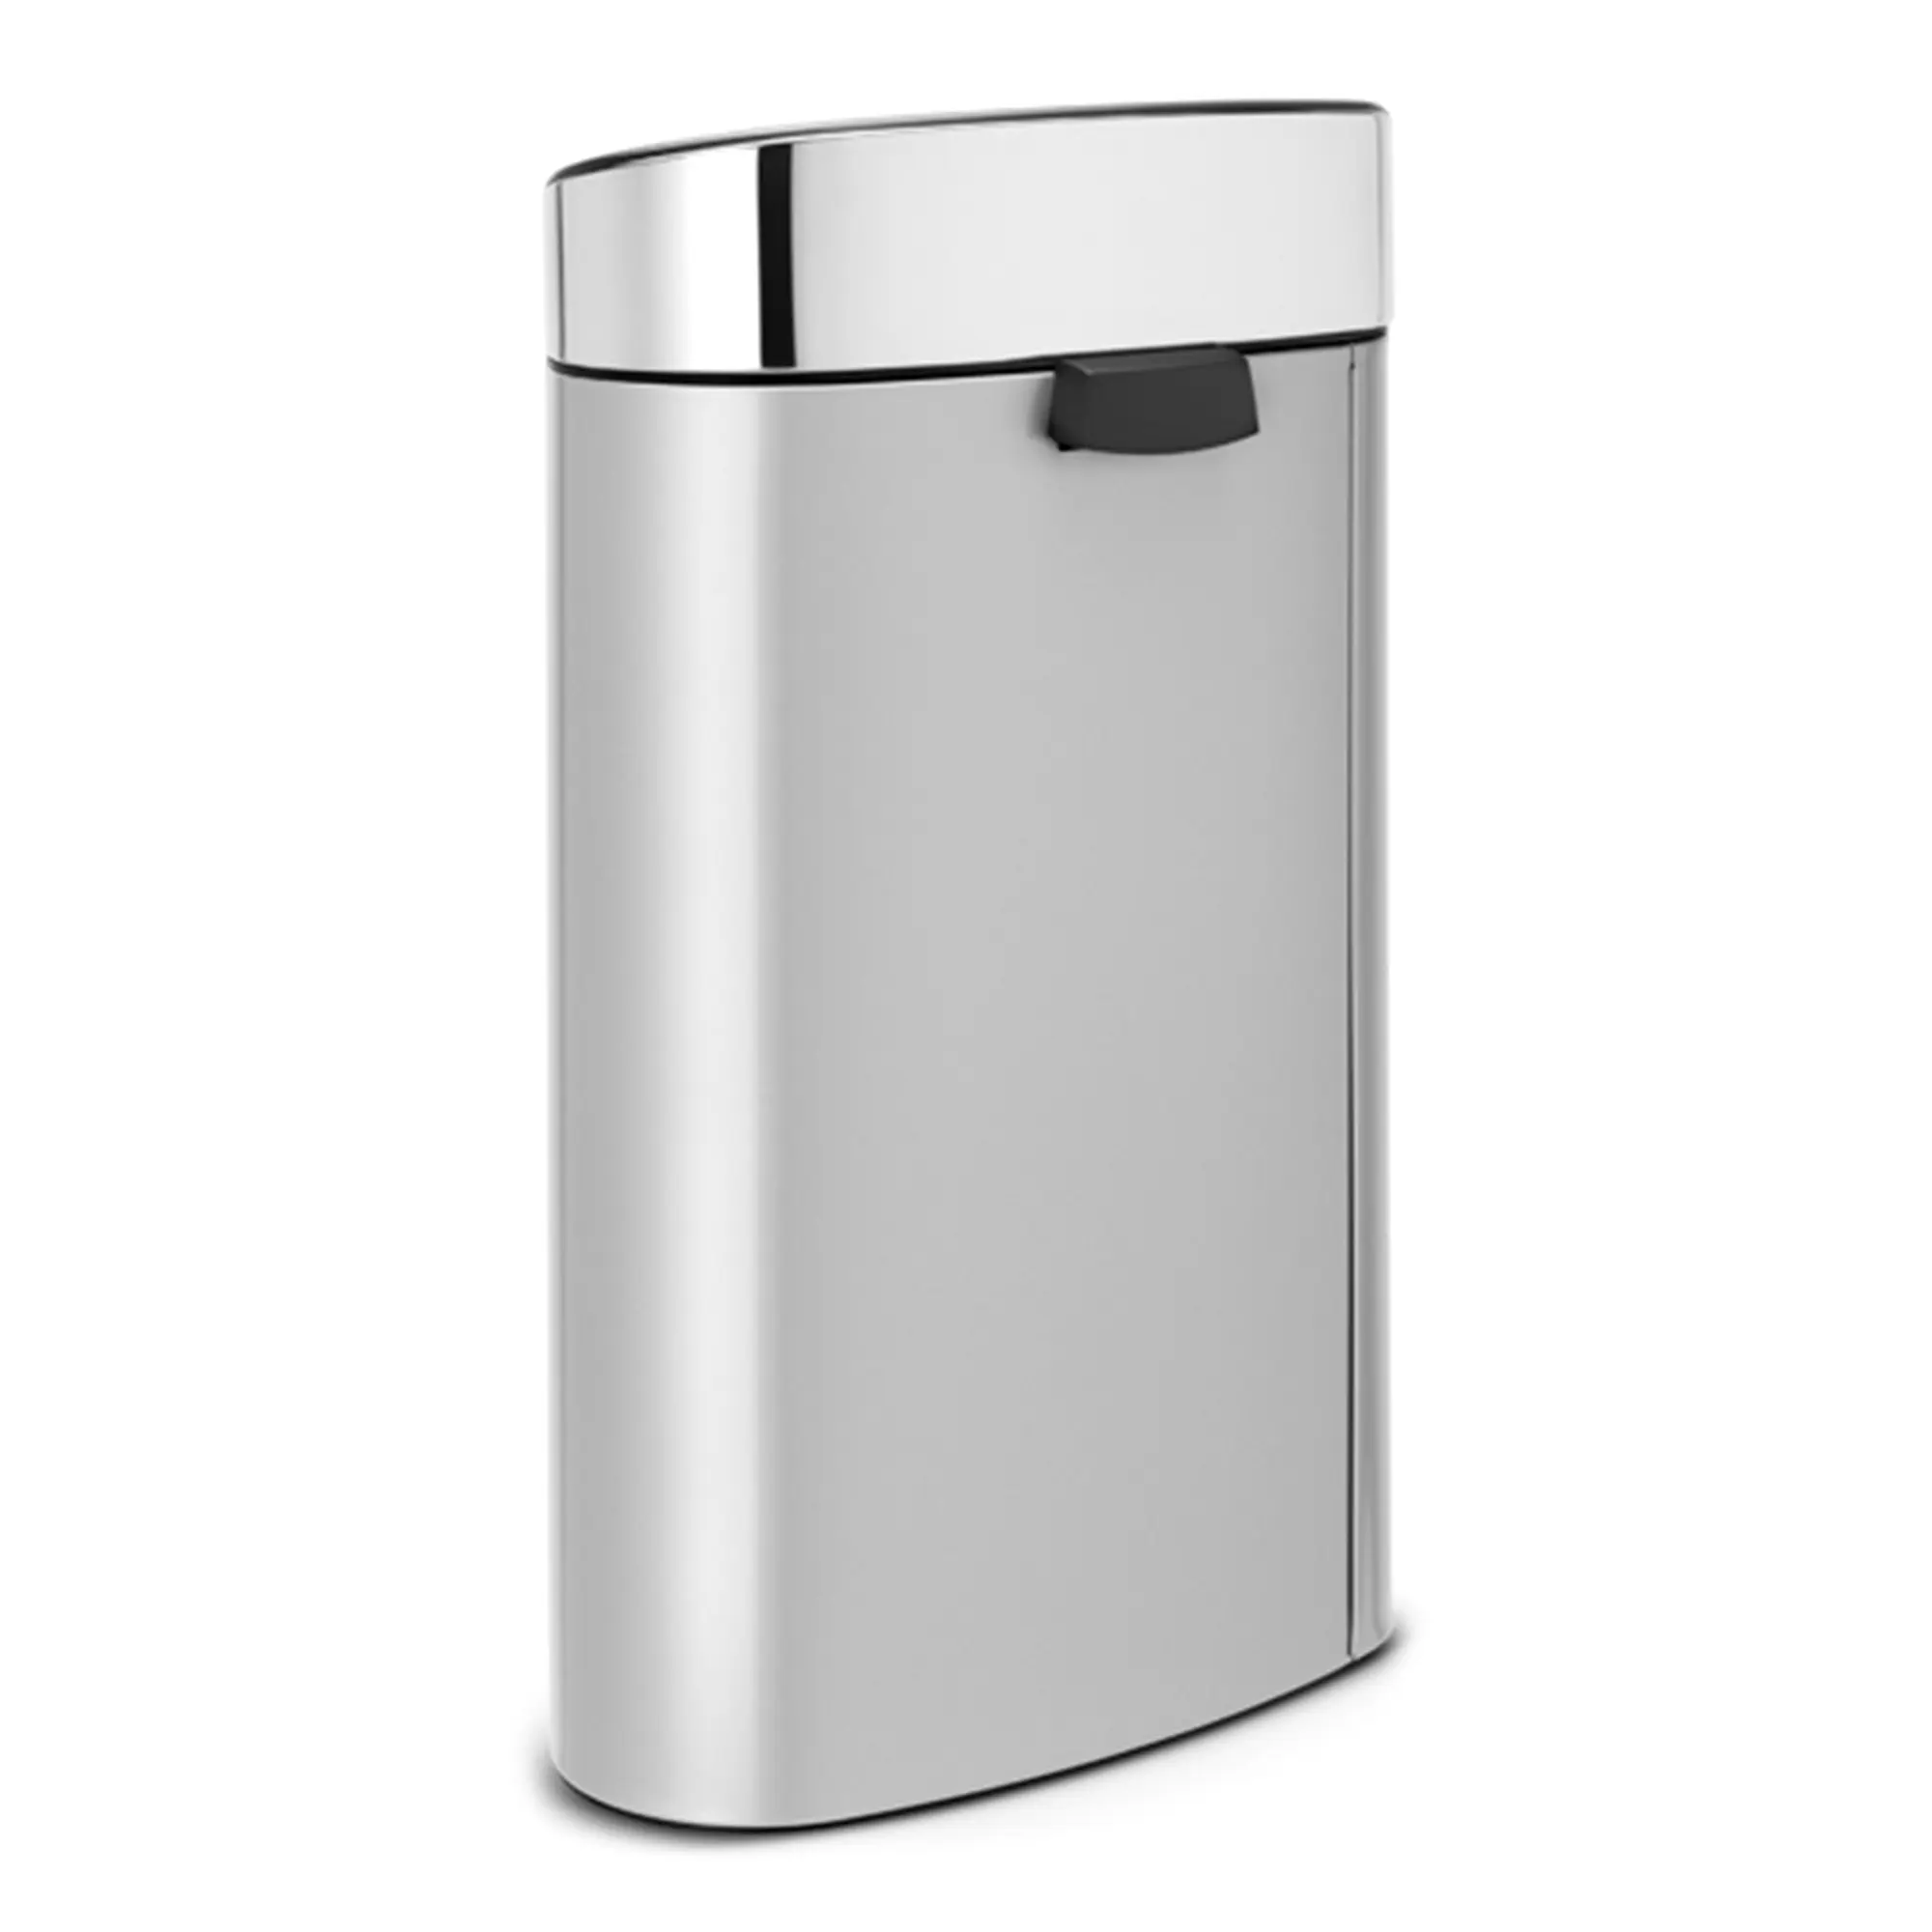 Brabantia Touch New Abfallbehälter 40 Liter Edelstahl Metallic Grau platzsparendes Design 55114861